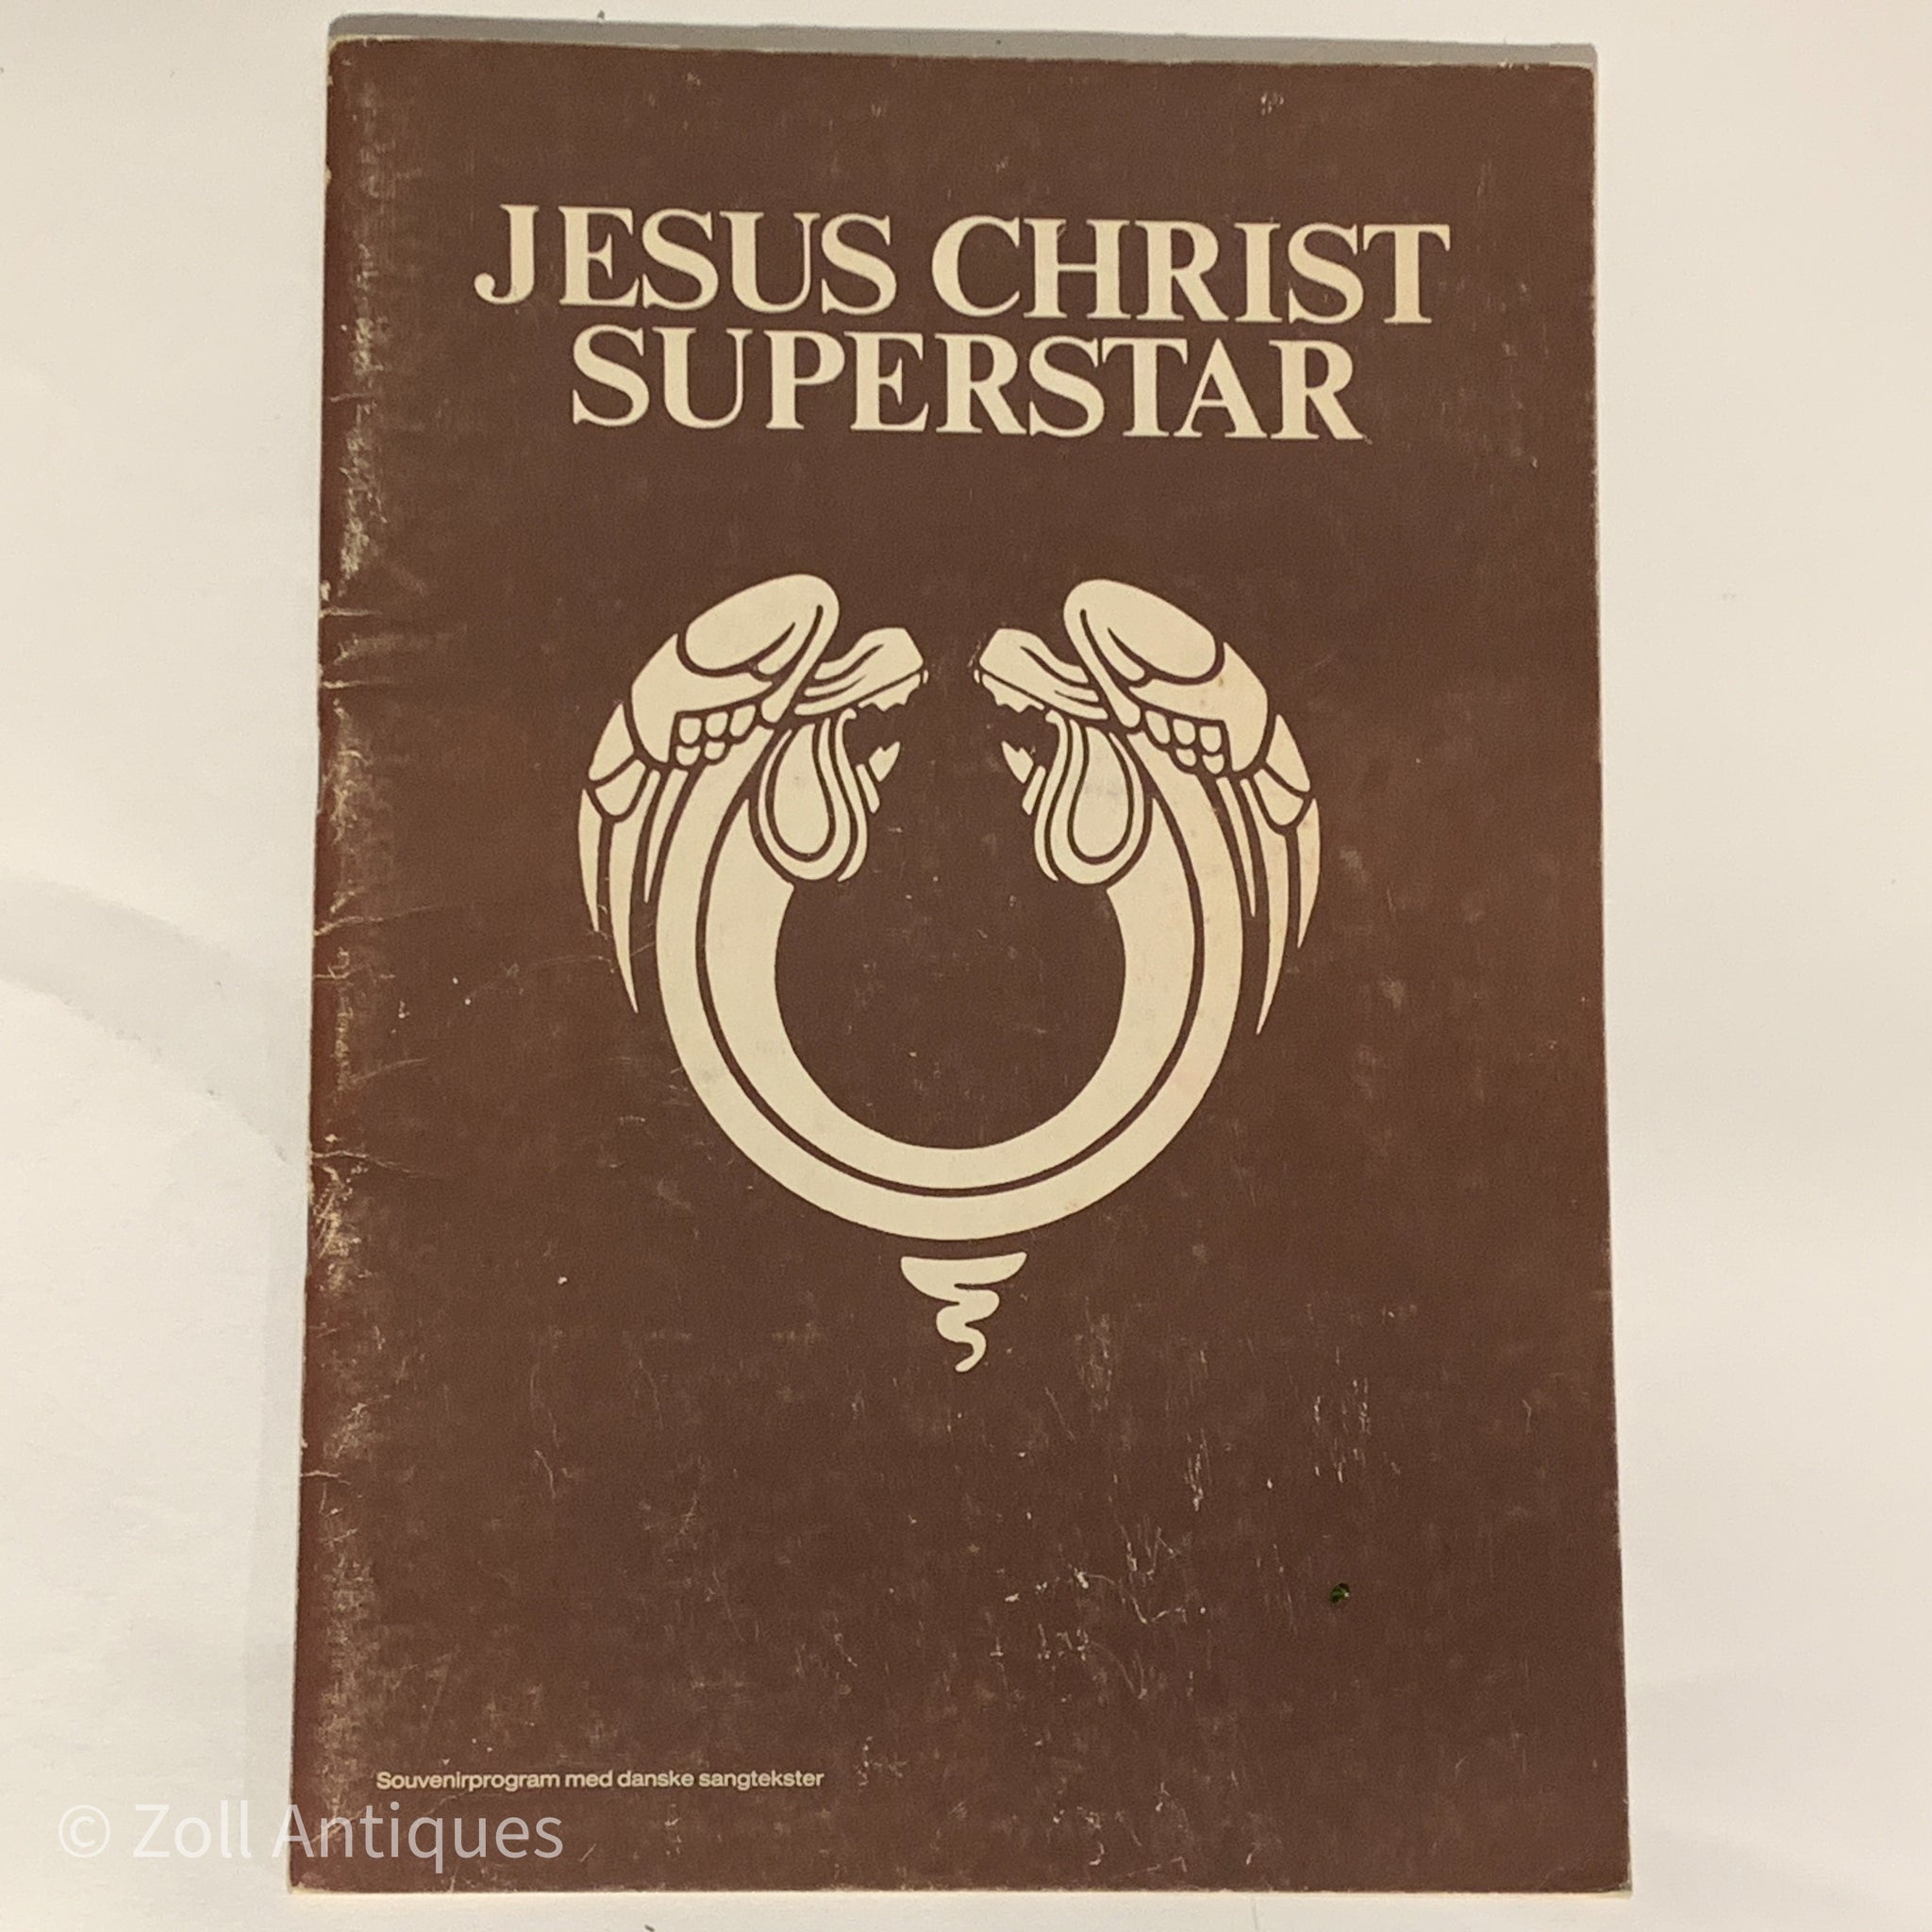 Originalt Teaterprogram, Jesus Christ Superstar, fra 70erne